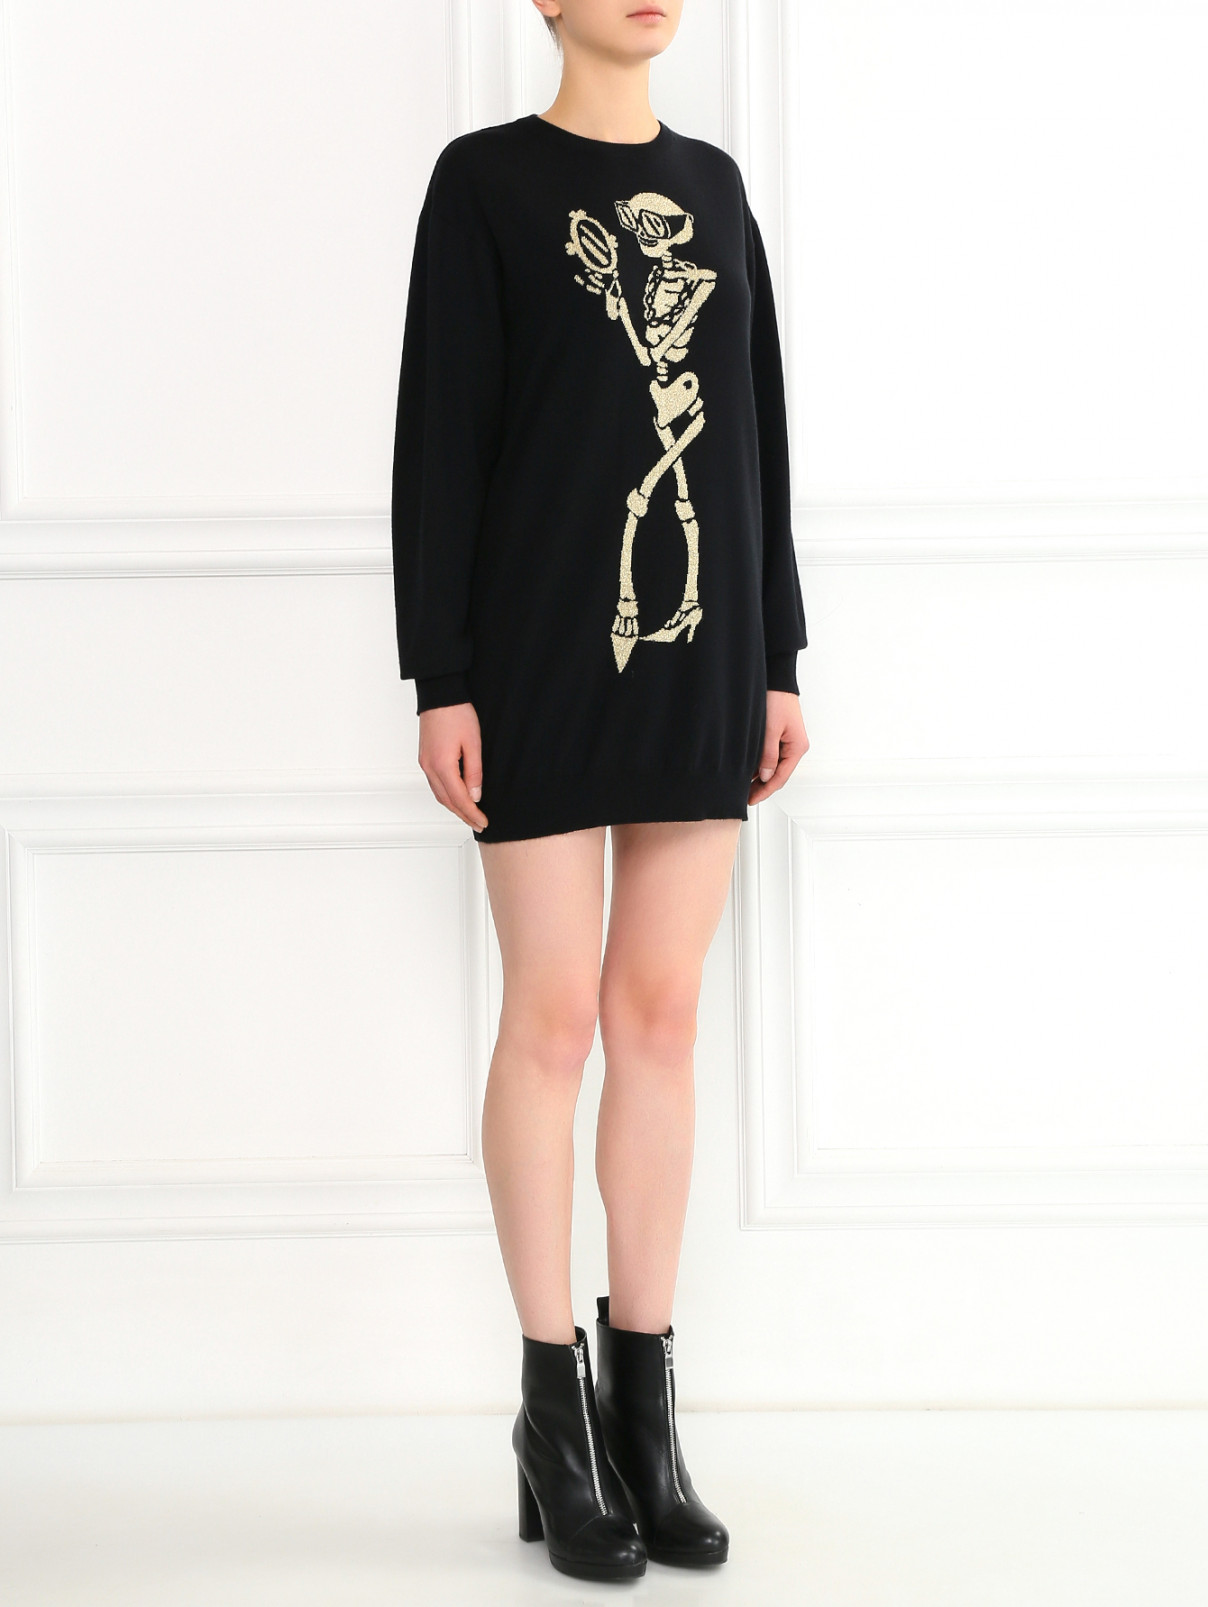 Трикотажное платье из шерсти с узором и длинными рукавами Moschino Couture  –  Модель Общий вид  – Цвет:  Черный